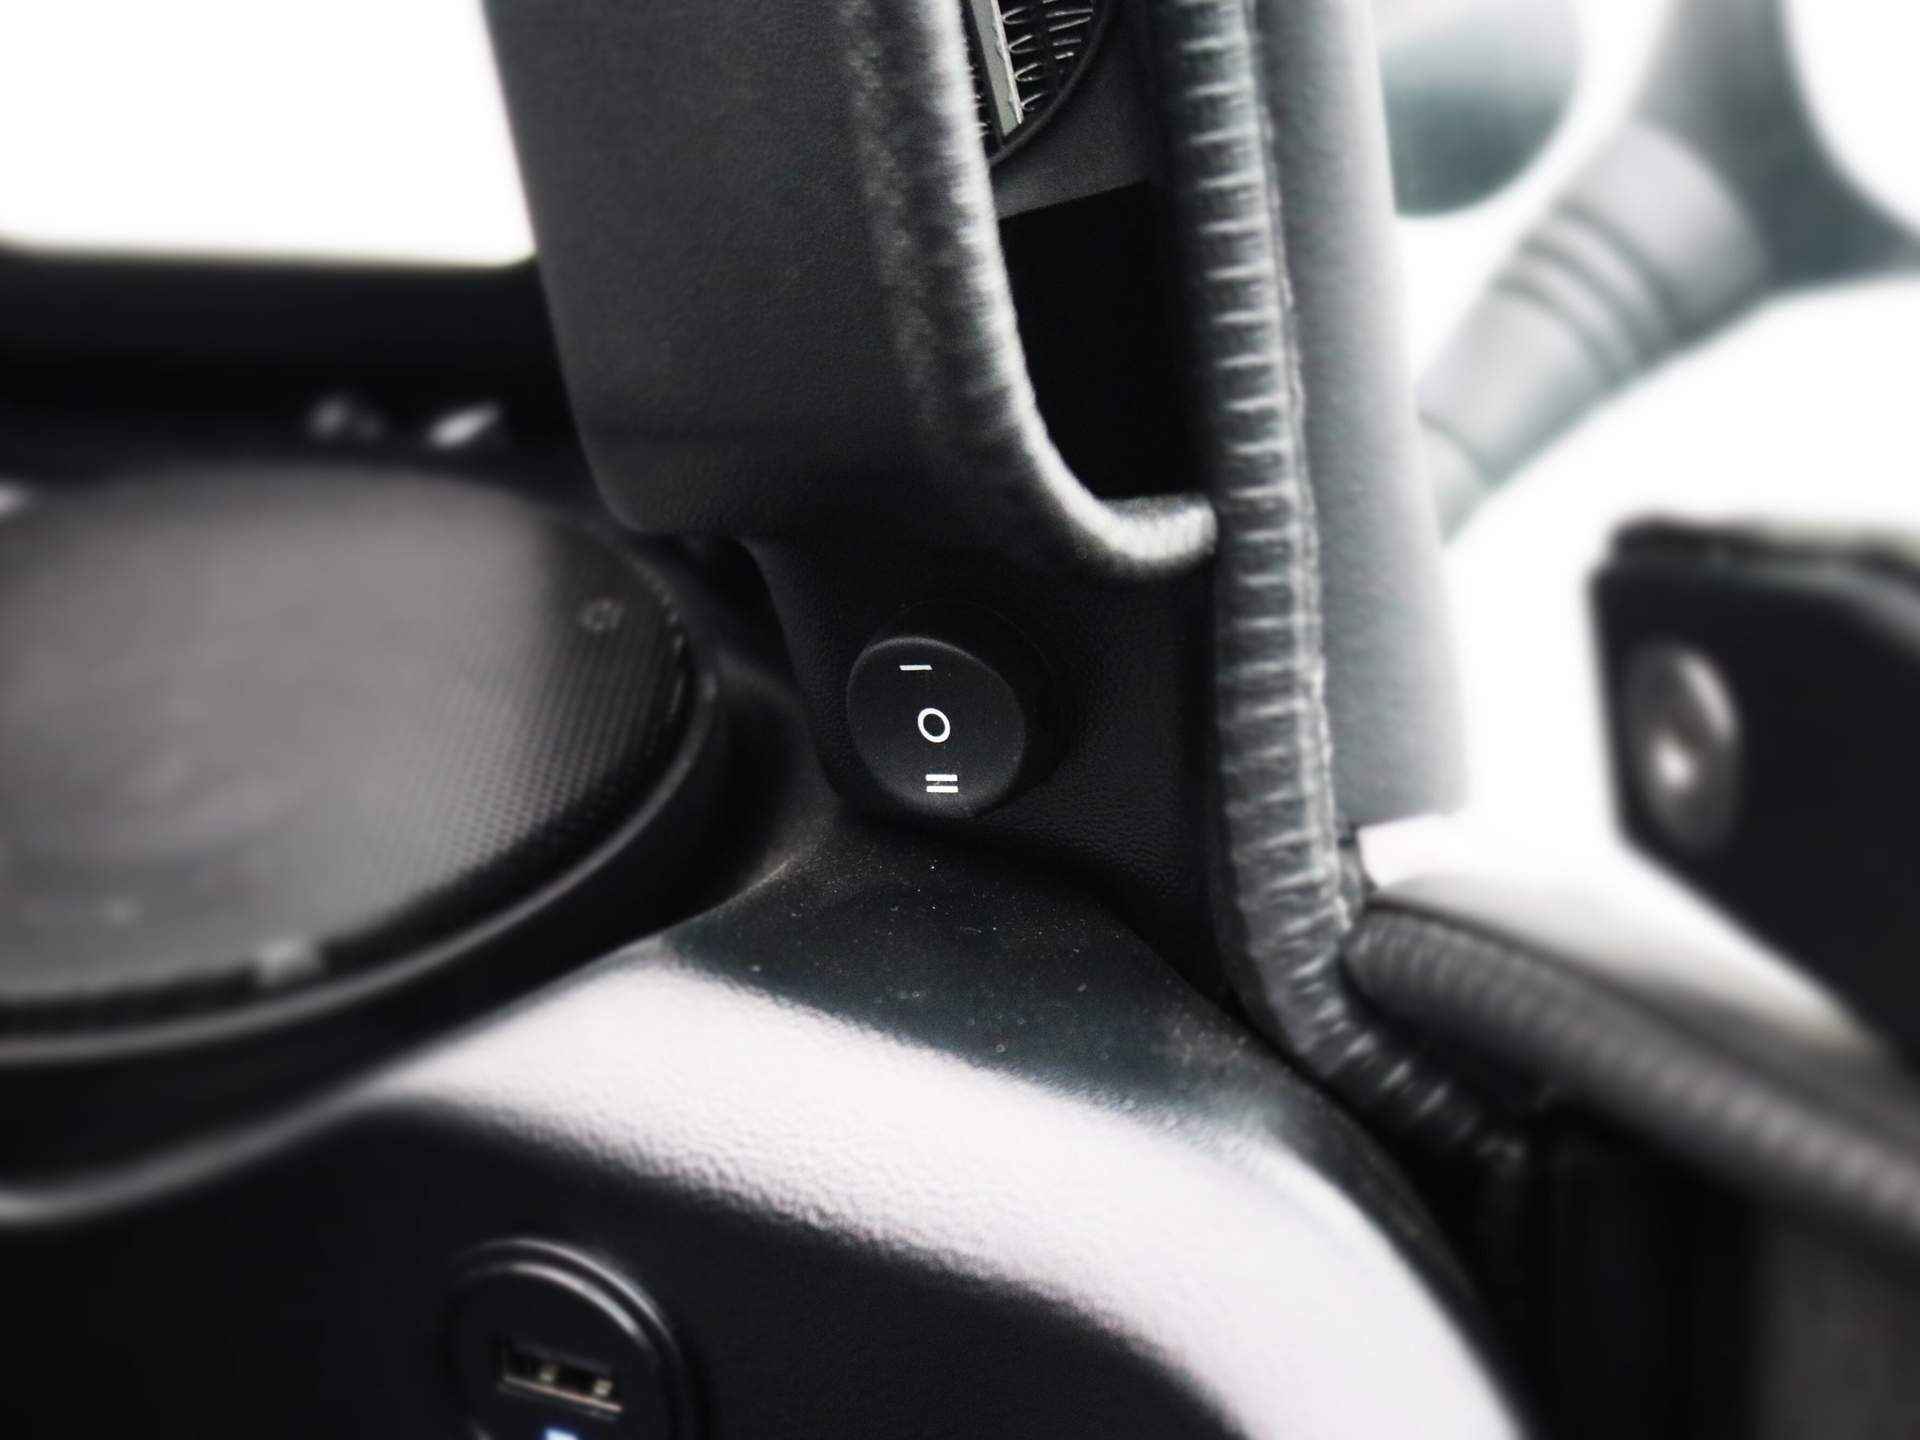 Carver R+ Brommobiel | Voorruit verwarming | Bluetooth Audio | Cabrio dak | Dynamic Driving Modes | Telefoonhouder | USB | Geen wegenbelasting | 130KM Actieradius | Binnen 3 uur opgeladen! - 16/27